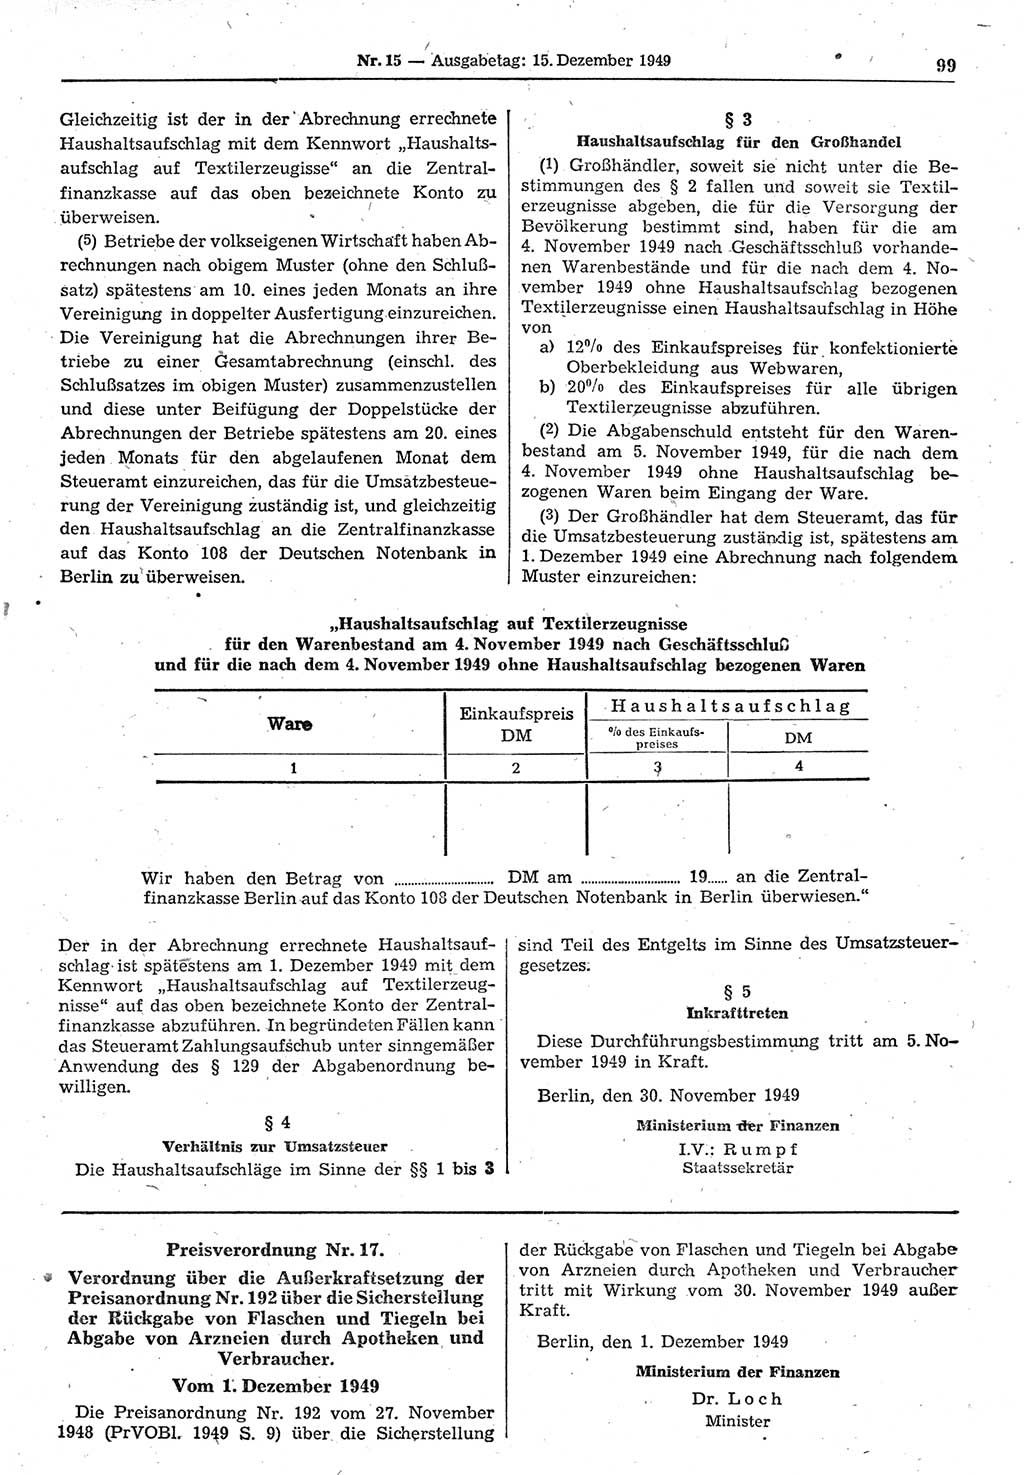 Gesetzblatt (GBl.) der Deutschen Demokratischen Republik (DDR) 1949, Seite 99 (GBl. DDR 1949, S. 99)